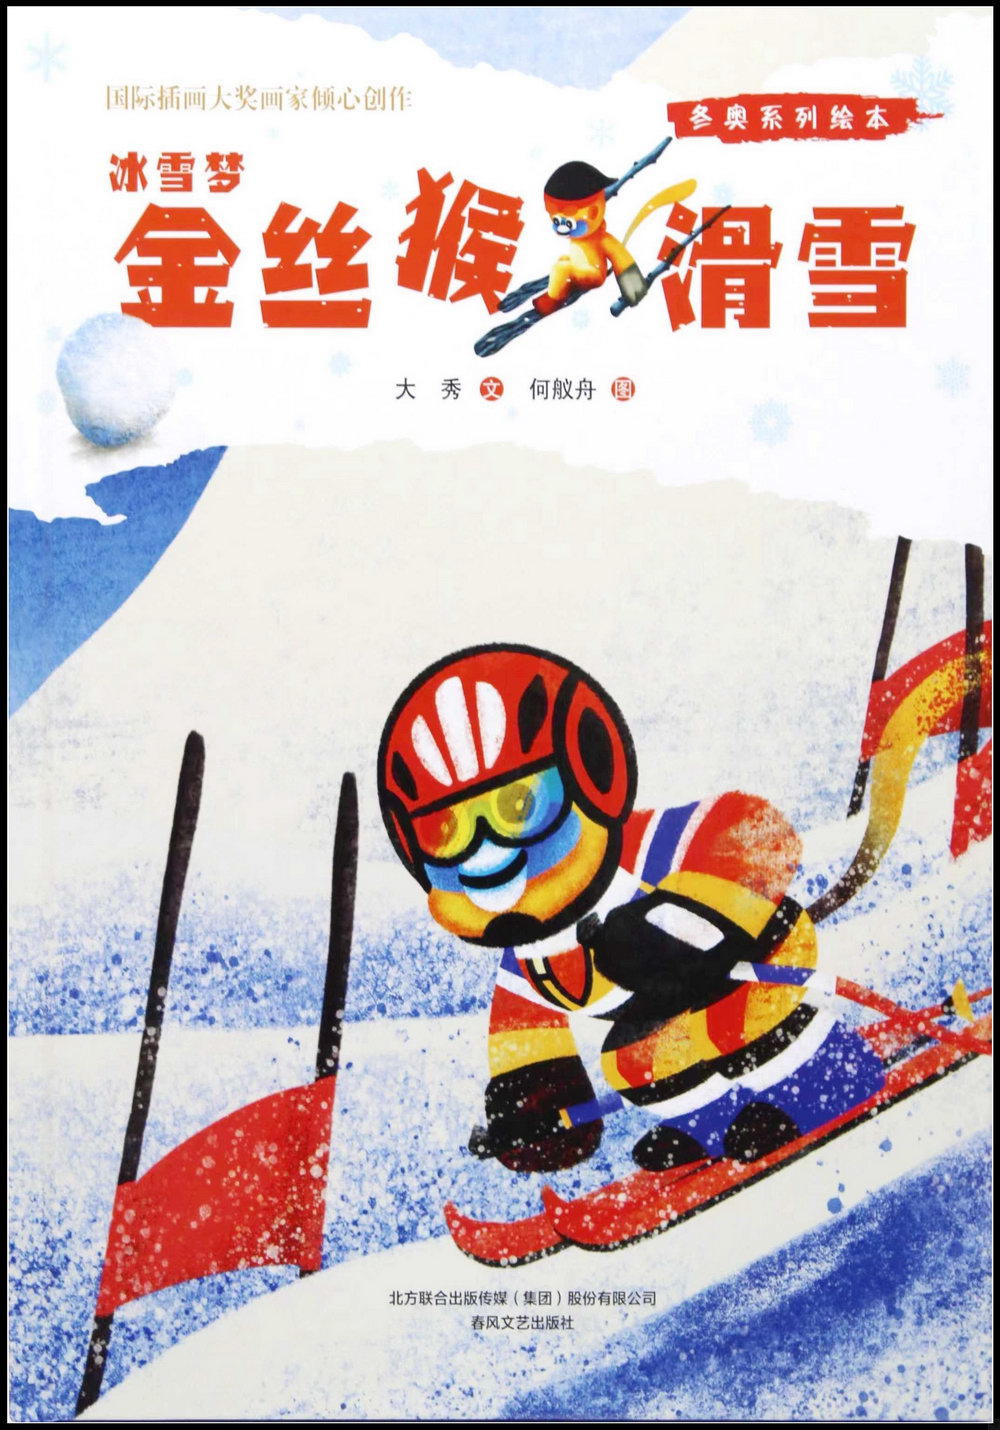 冬奧系列繪本冰雪夢：金絲猴滑雪